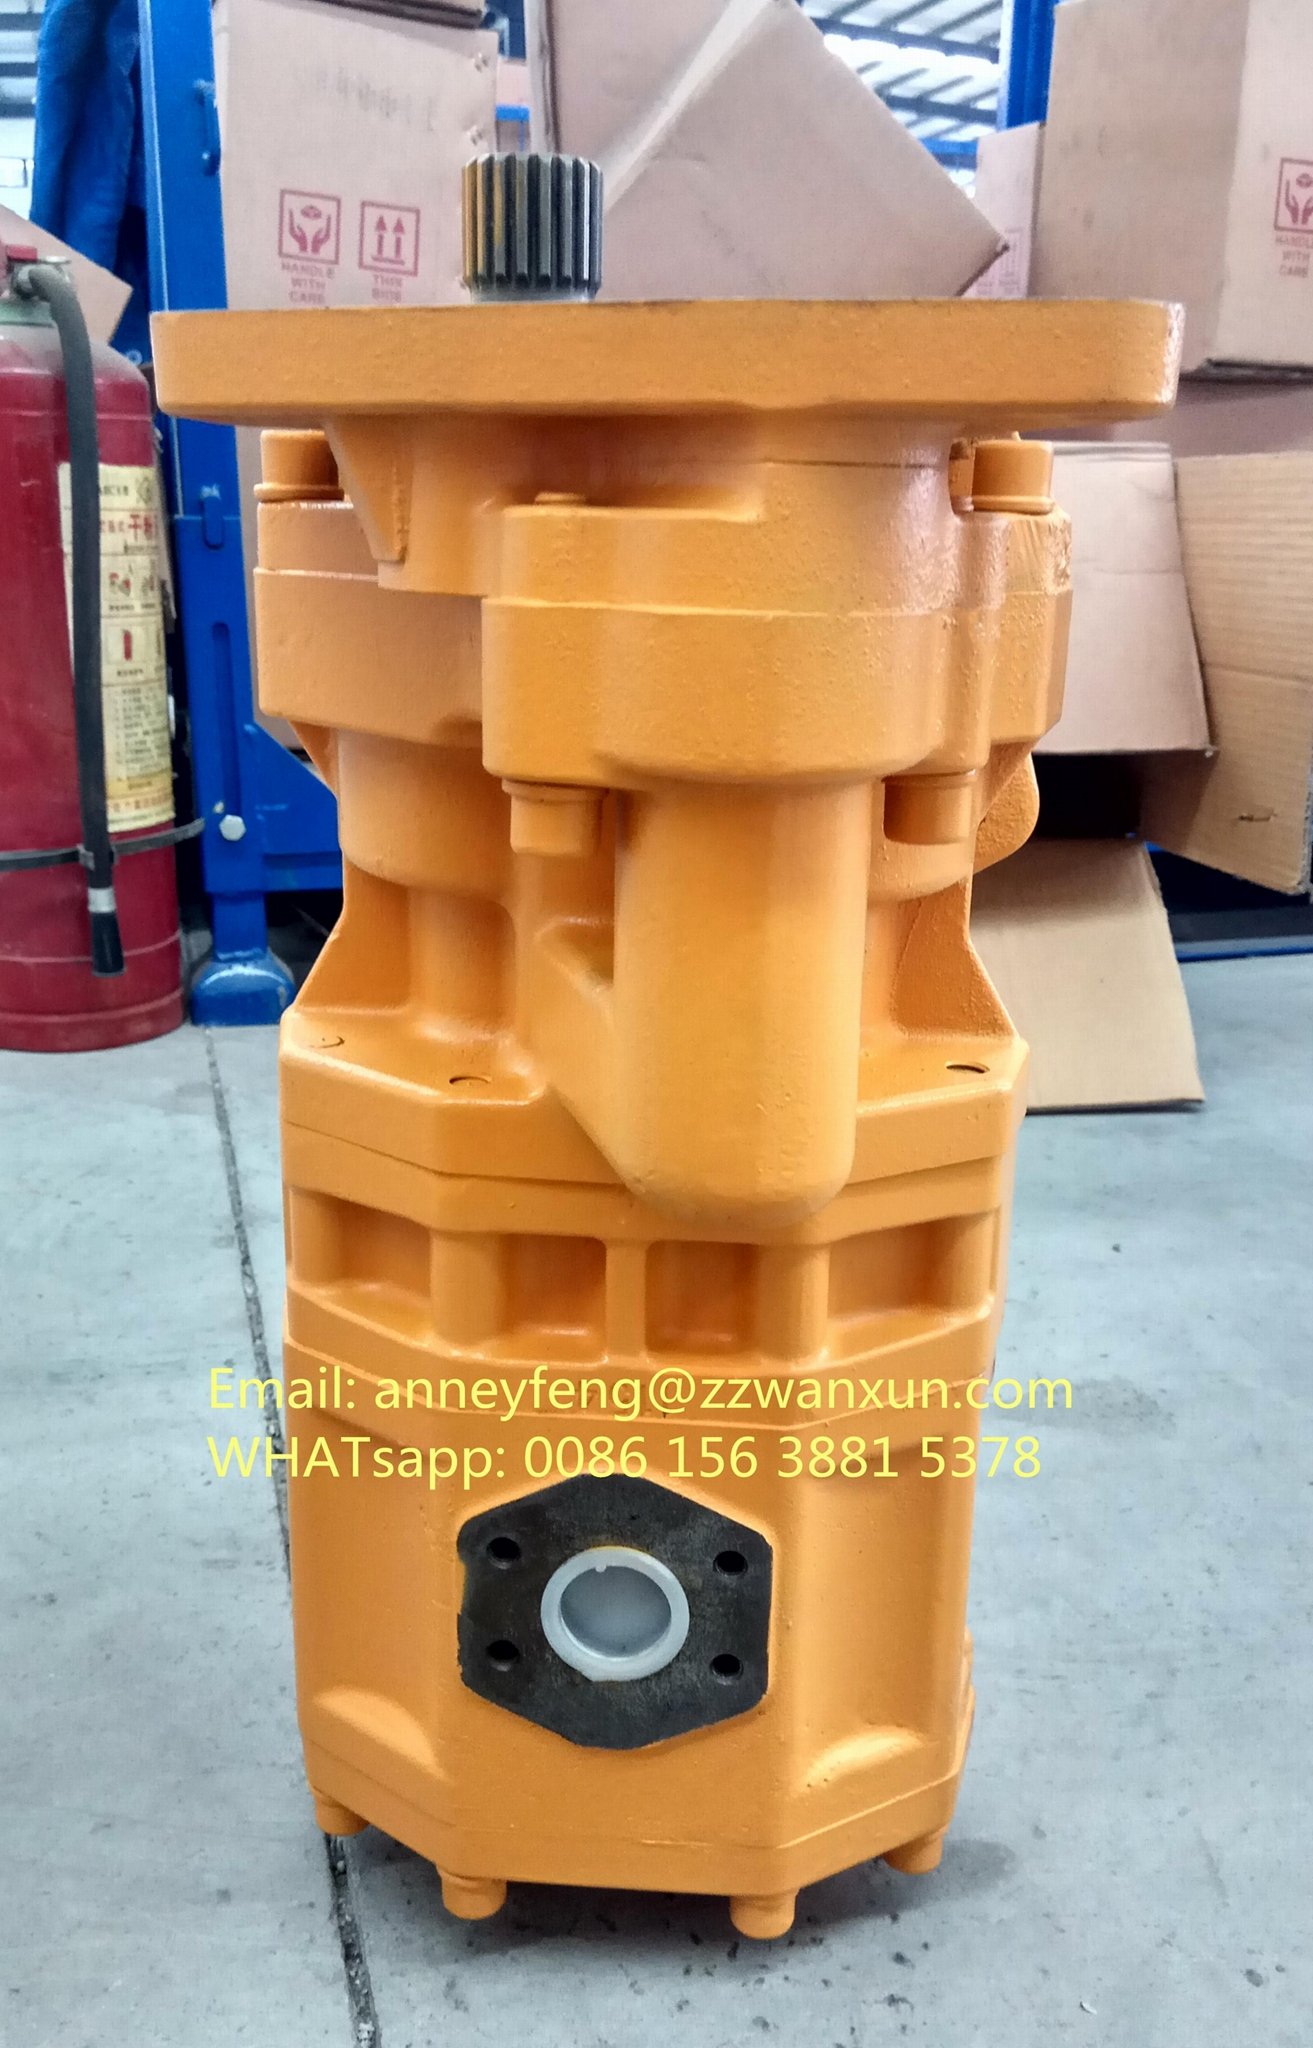 komatsu pump 704-71-44002 gear pump 704-71-44050 for bulldozer D375 D475 4